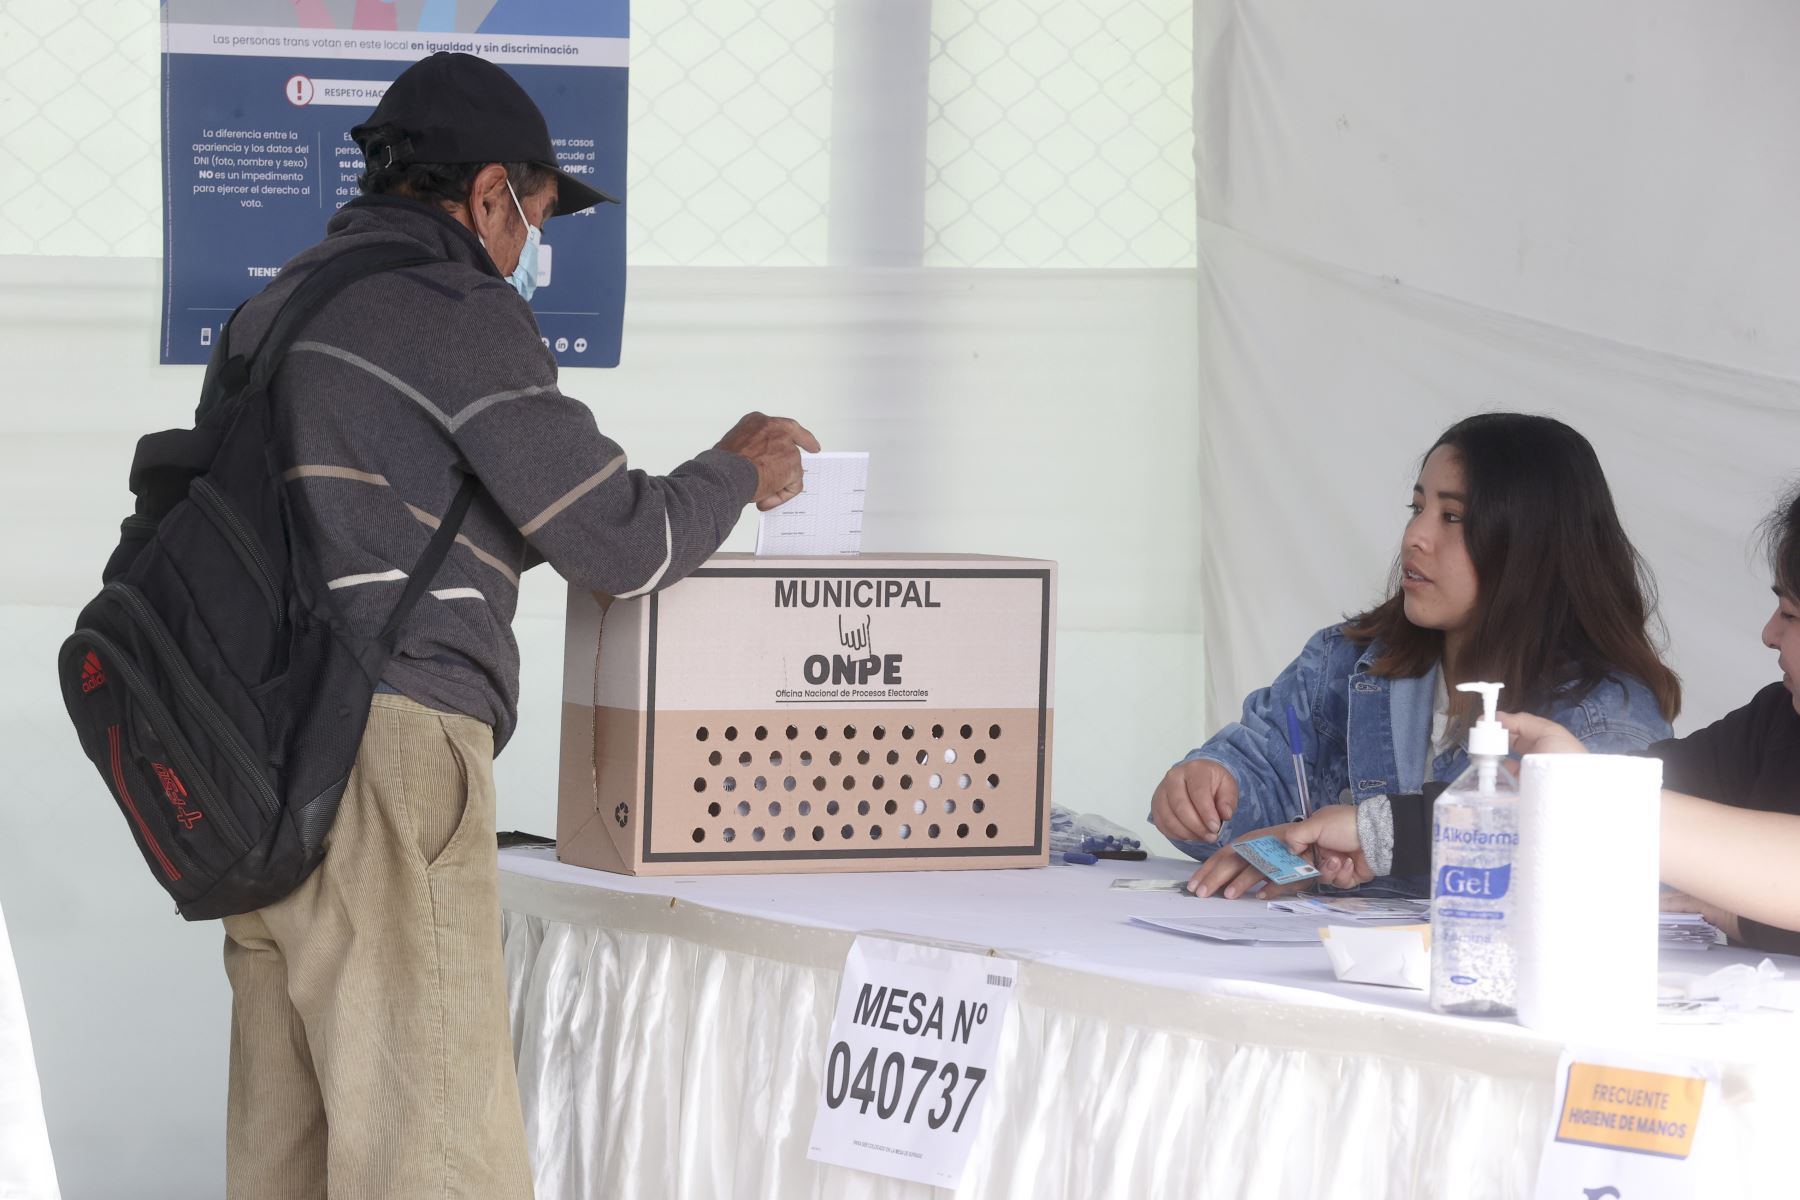 En los departamentos de Cajamarca, Callao, Cusco, Lambayeque, Lima Provincias, Moquegua, Pasco y Piura habrá segunda vuelta para elegir al gobierno regional para el periodo 2023-2026, según los resultados oficiales publicados por la Oficina Nacional de Procesos Electorales (ONPE) con más del 95% de actas contabilizadas hasta hoy. ANDINA/Vidal Tarqui